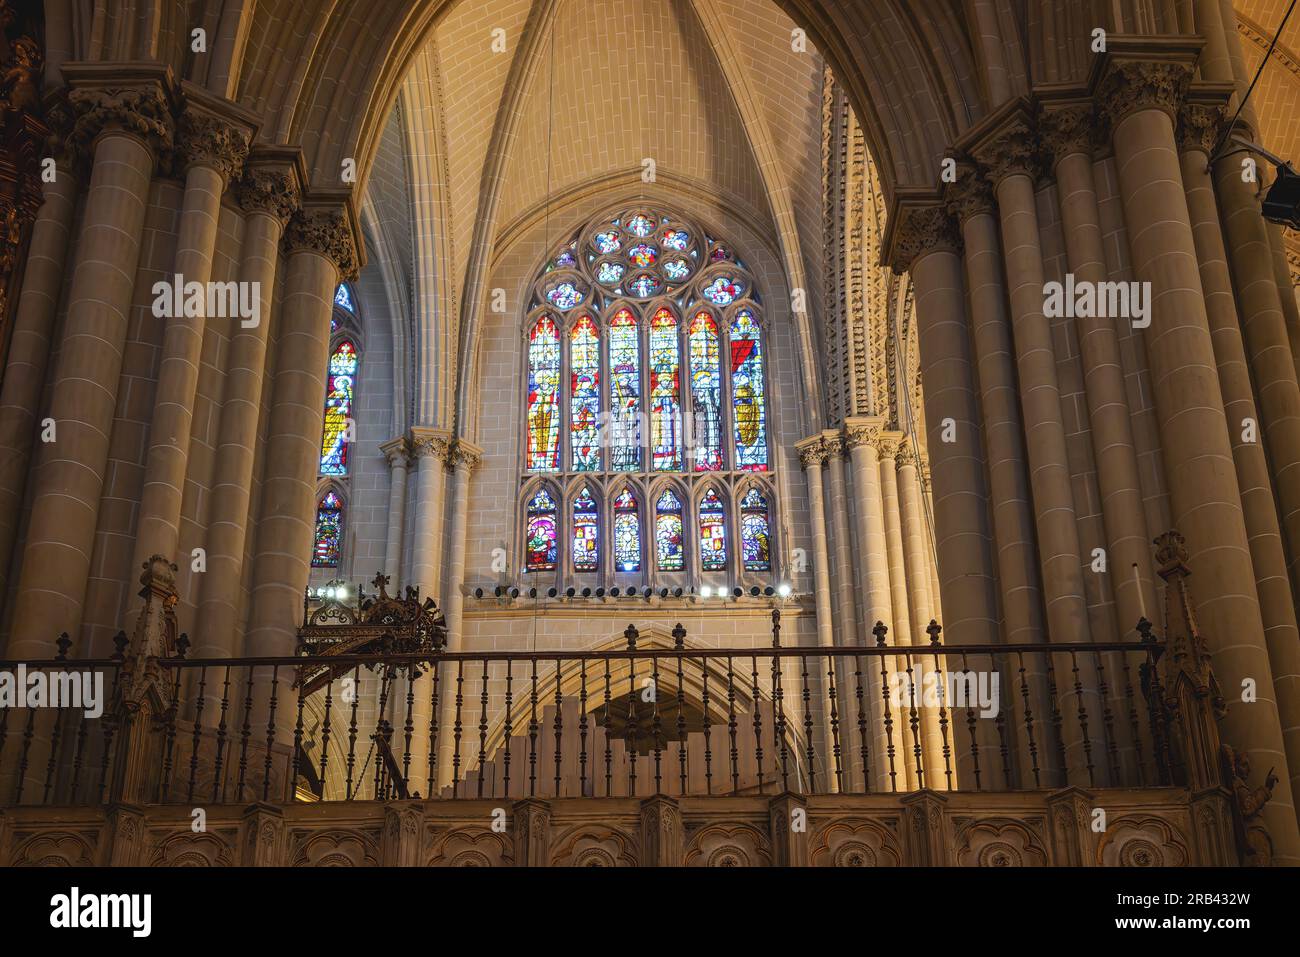 Vidrieras en el interior de la Catedral de Toledo - Toledo, España Foto de stock